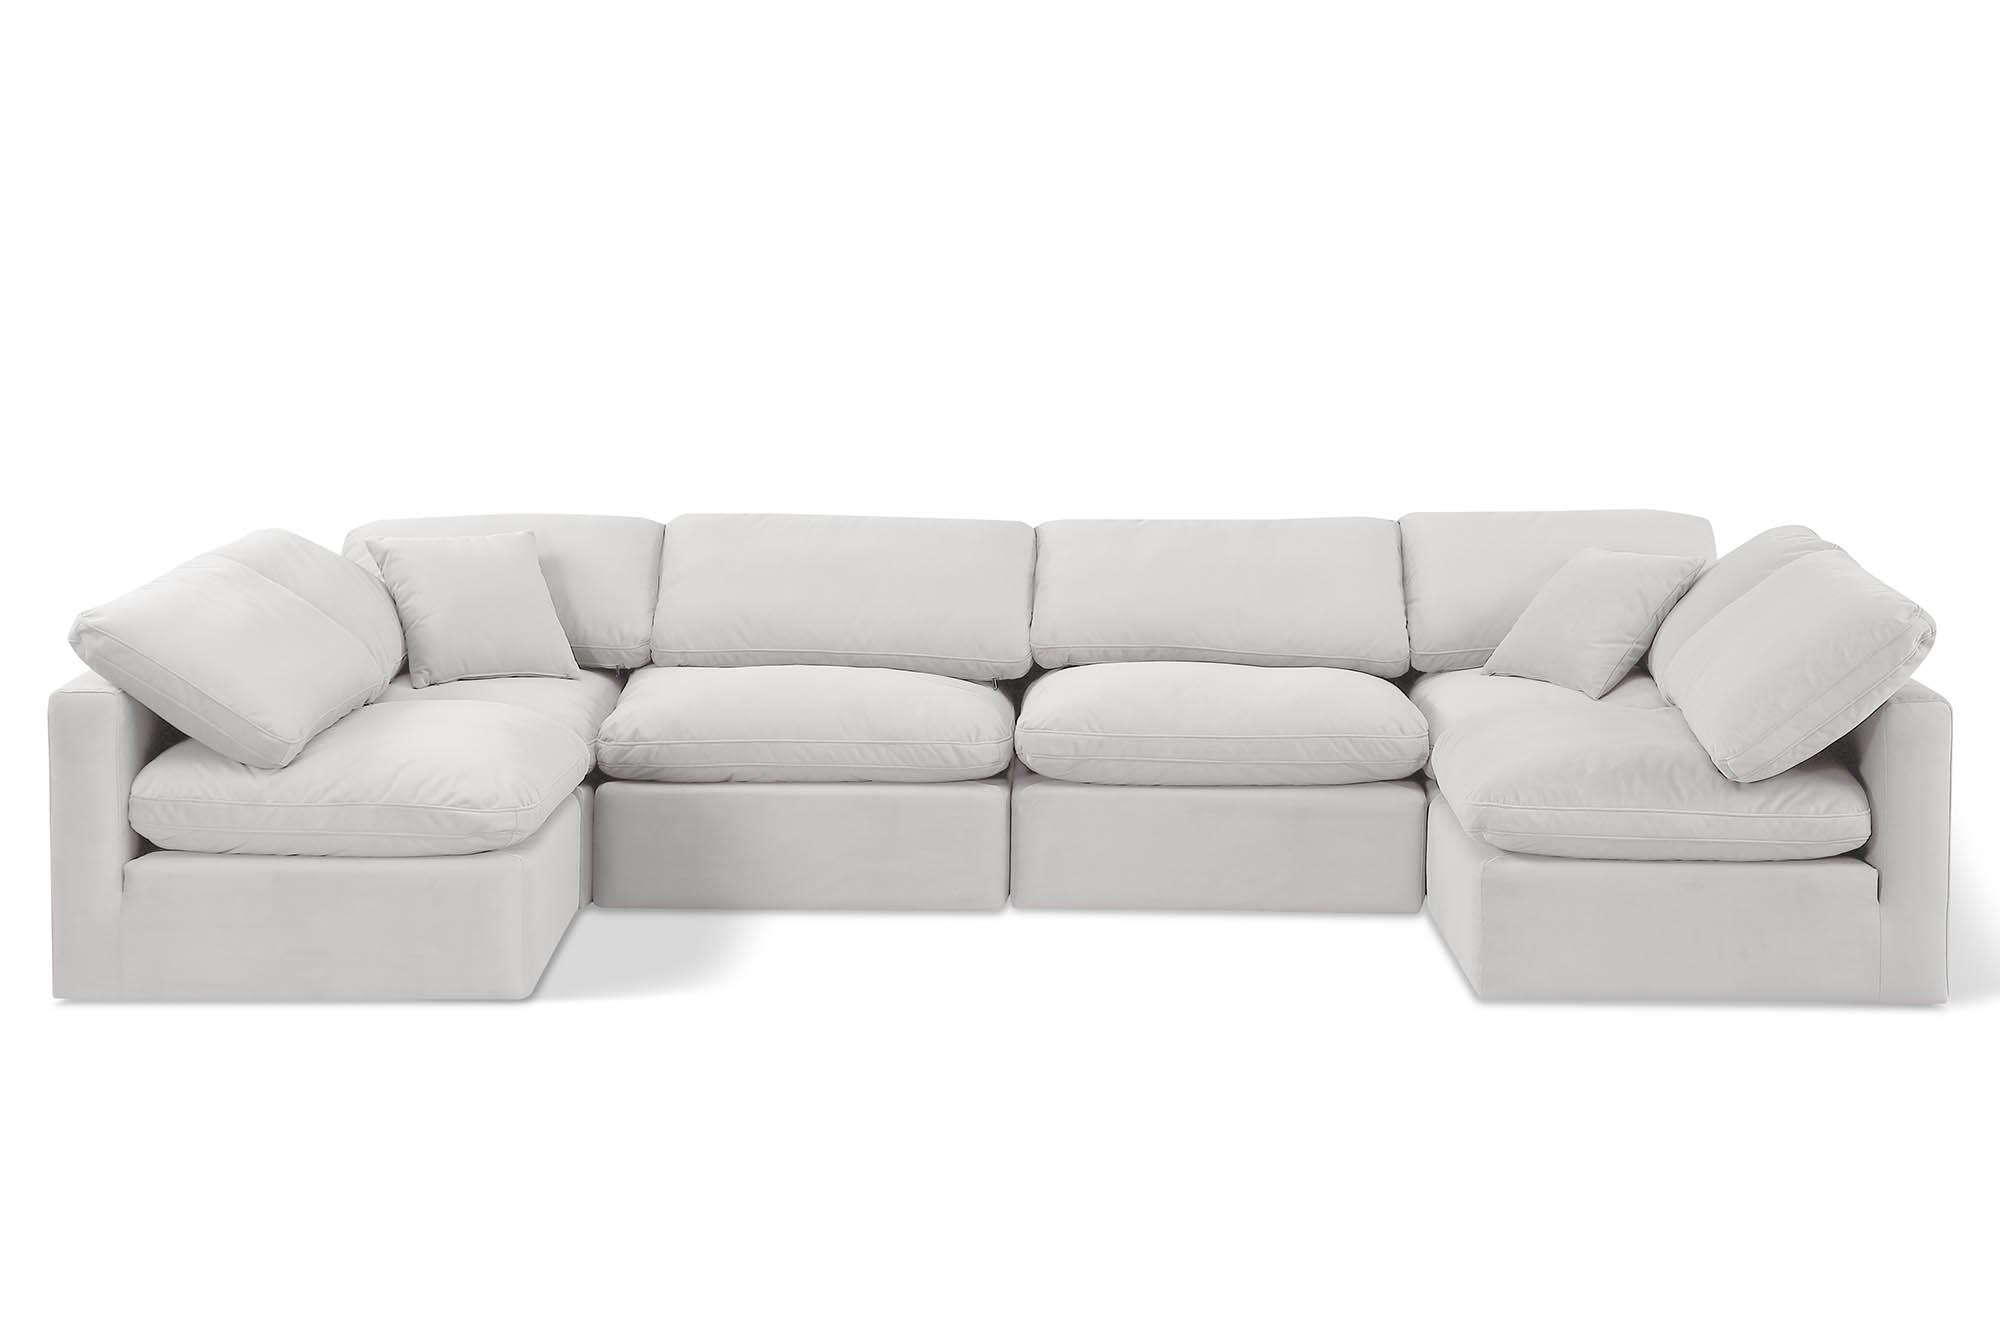 Contemporary, Modern Modular Sectional Sofa INDULGE 147Cream-Sec6D 147Cream-Sec6D in Cream Velvet